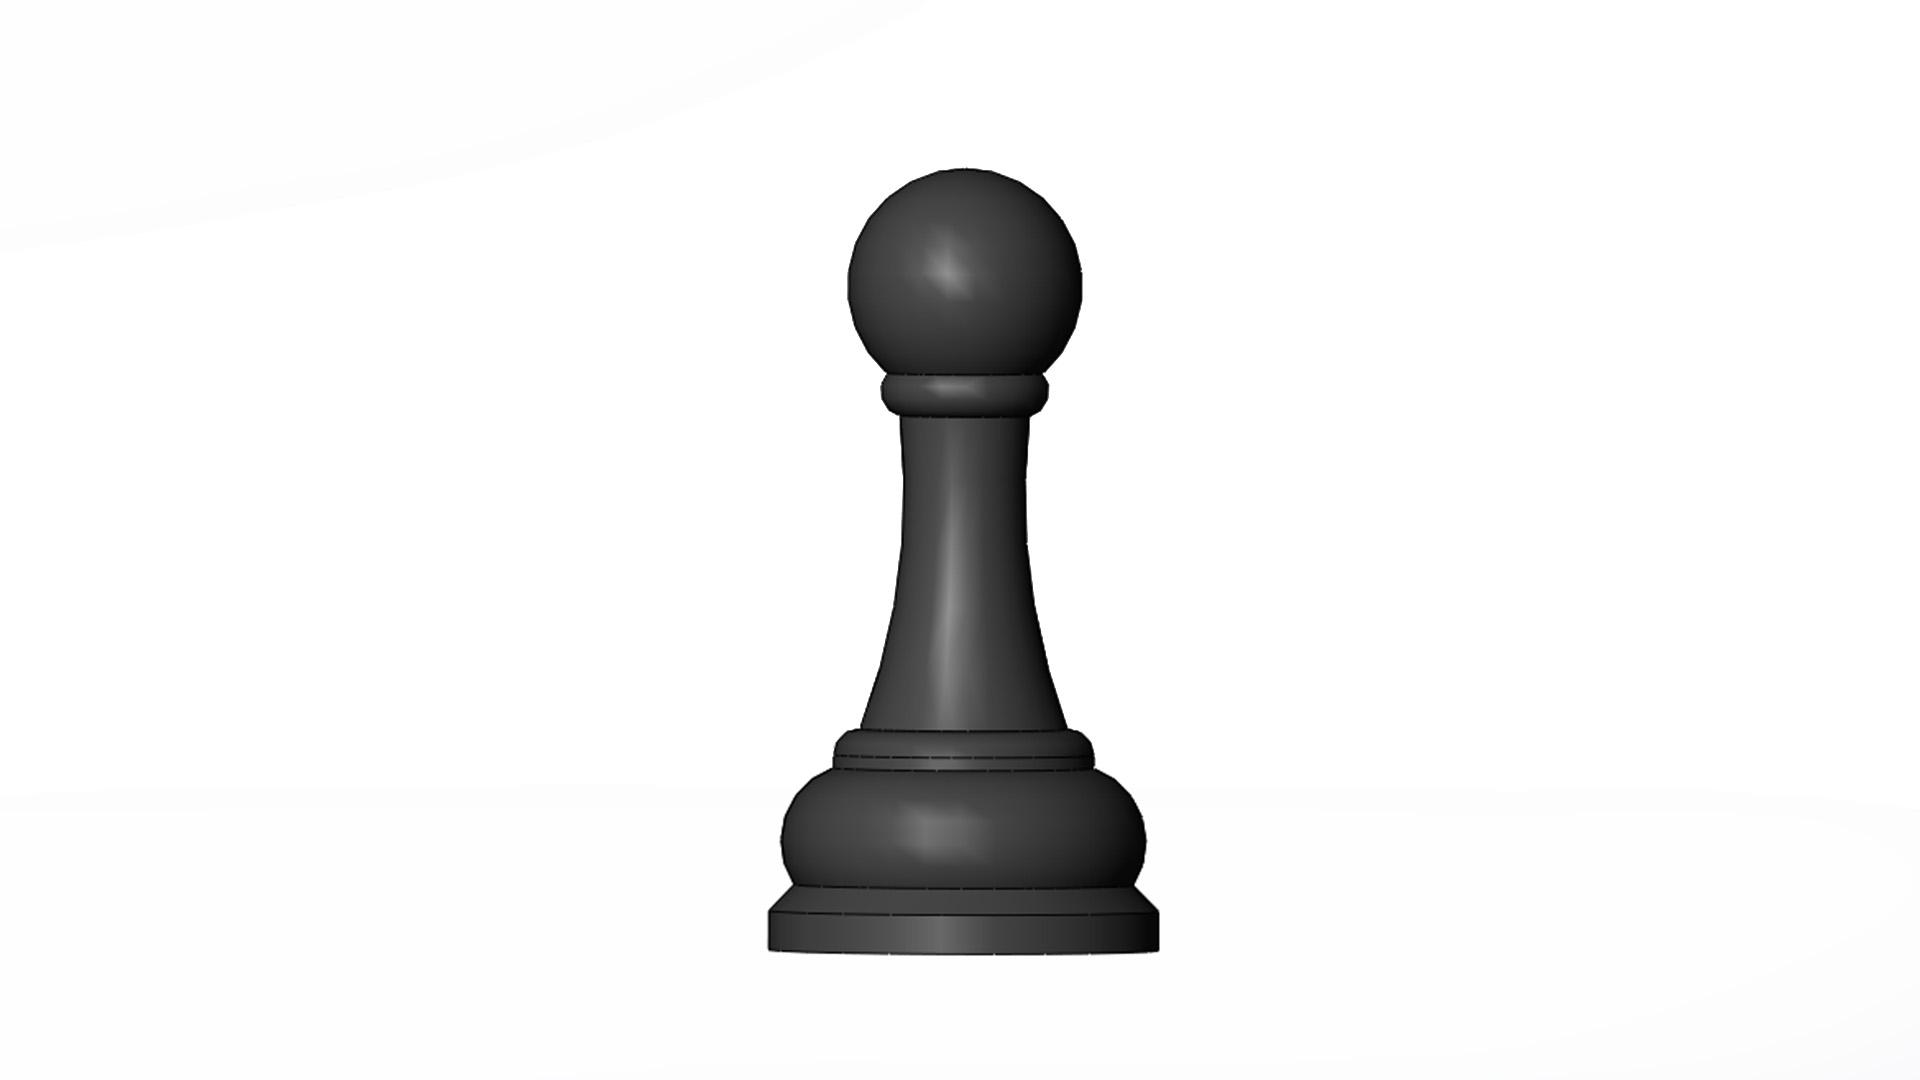 Peça de xadrez, Pião - 3D model by GuilhermeGontijo on Thangs